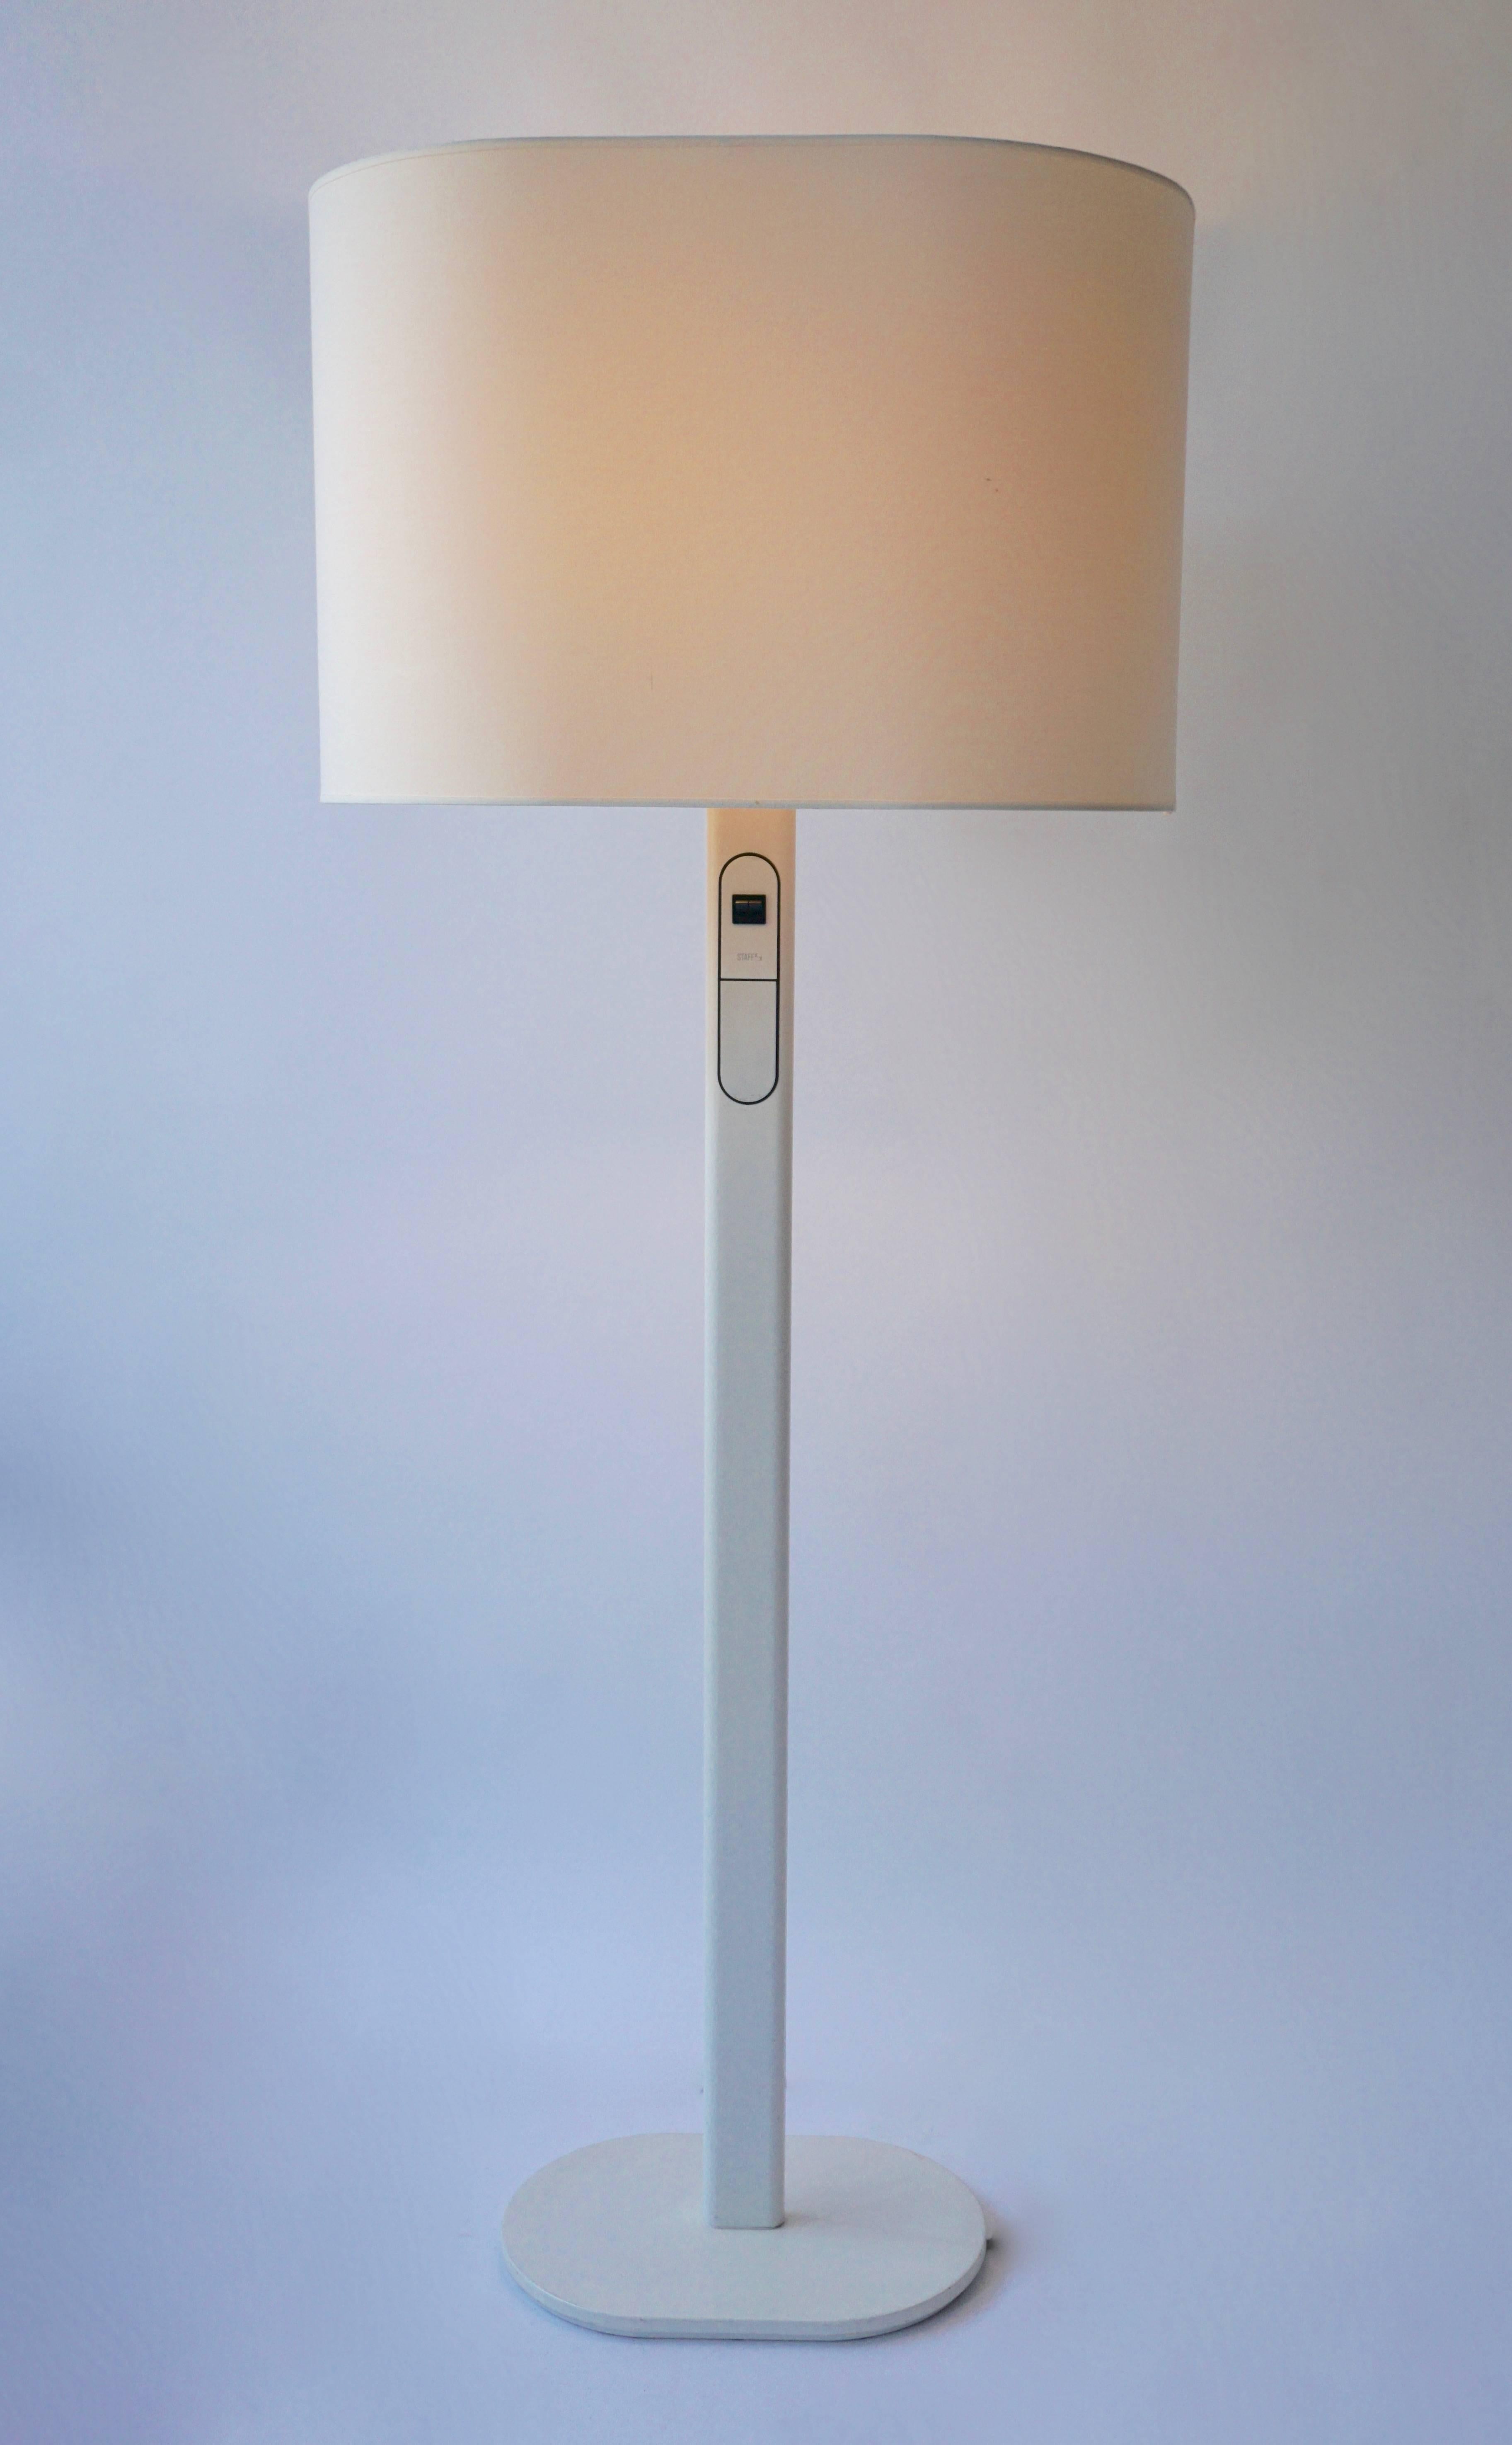 Seltene Stehlampe von Staff, Deutschland.
Der Dimmer ist in die Leuchte integriert und die obere Leuchte kann separat gedimmt werden.
Eine seltene funktionale Form in schönem Vintage-Zustand.
Maße: Höhe 152 cm.